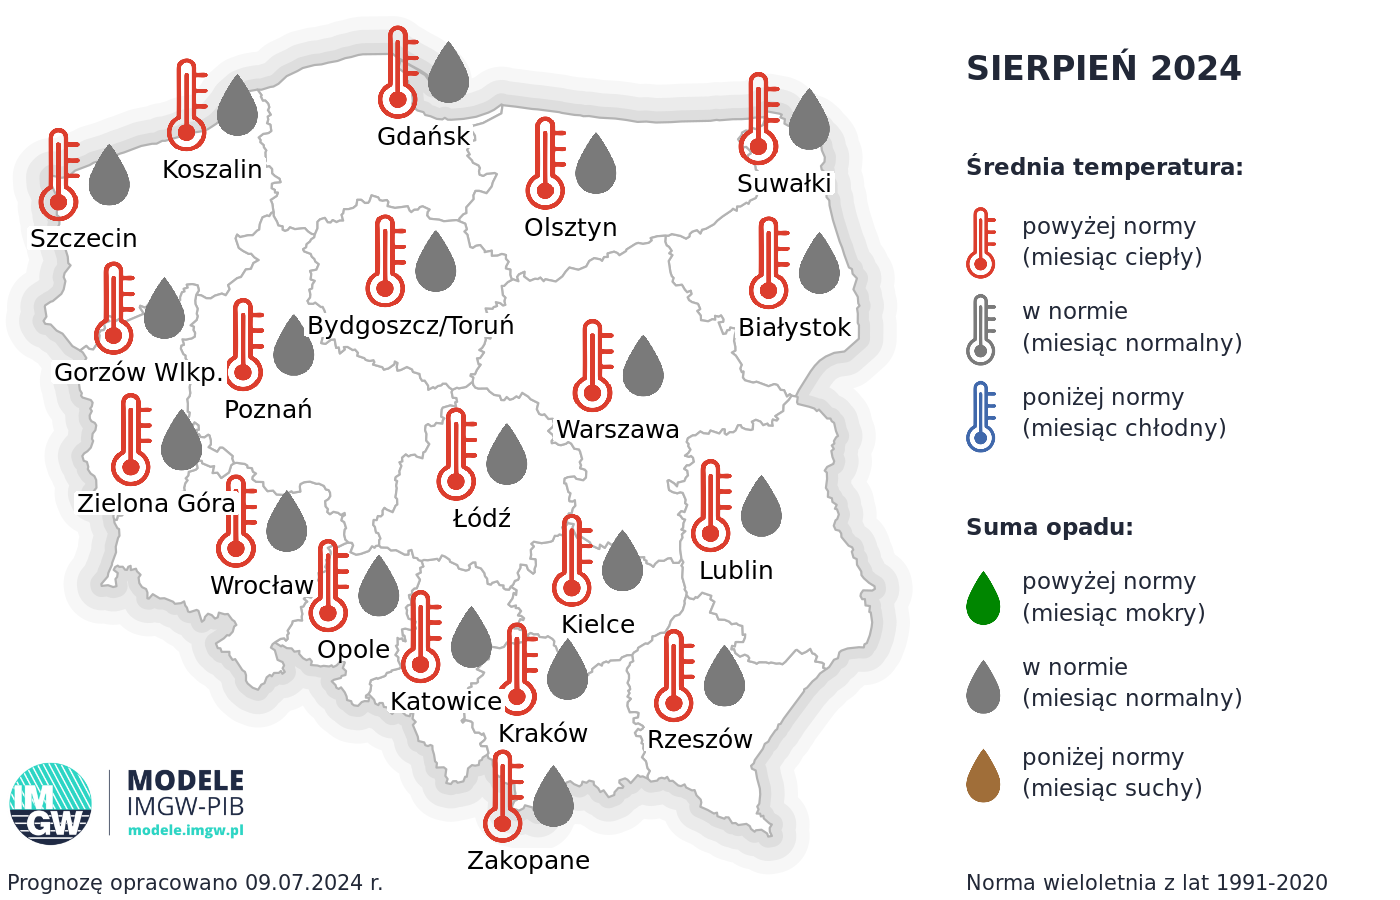 Rys. 1. Prognoza średniej miesięcznej temperatury powietrza i miesięcznej sumy opadów atmosferycznych na sierpień 2024 r. dla wybranych miast w Polsce